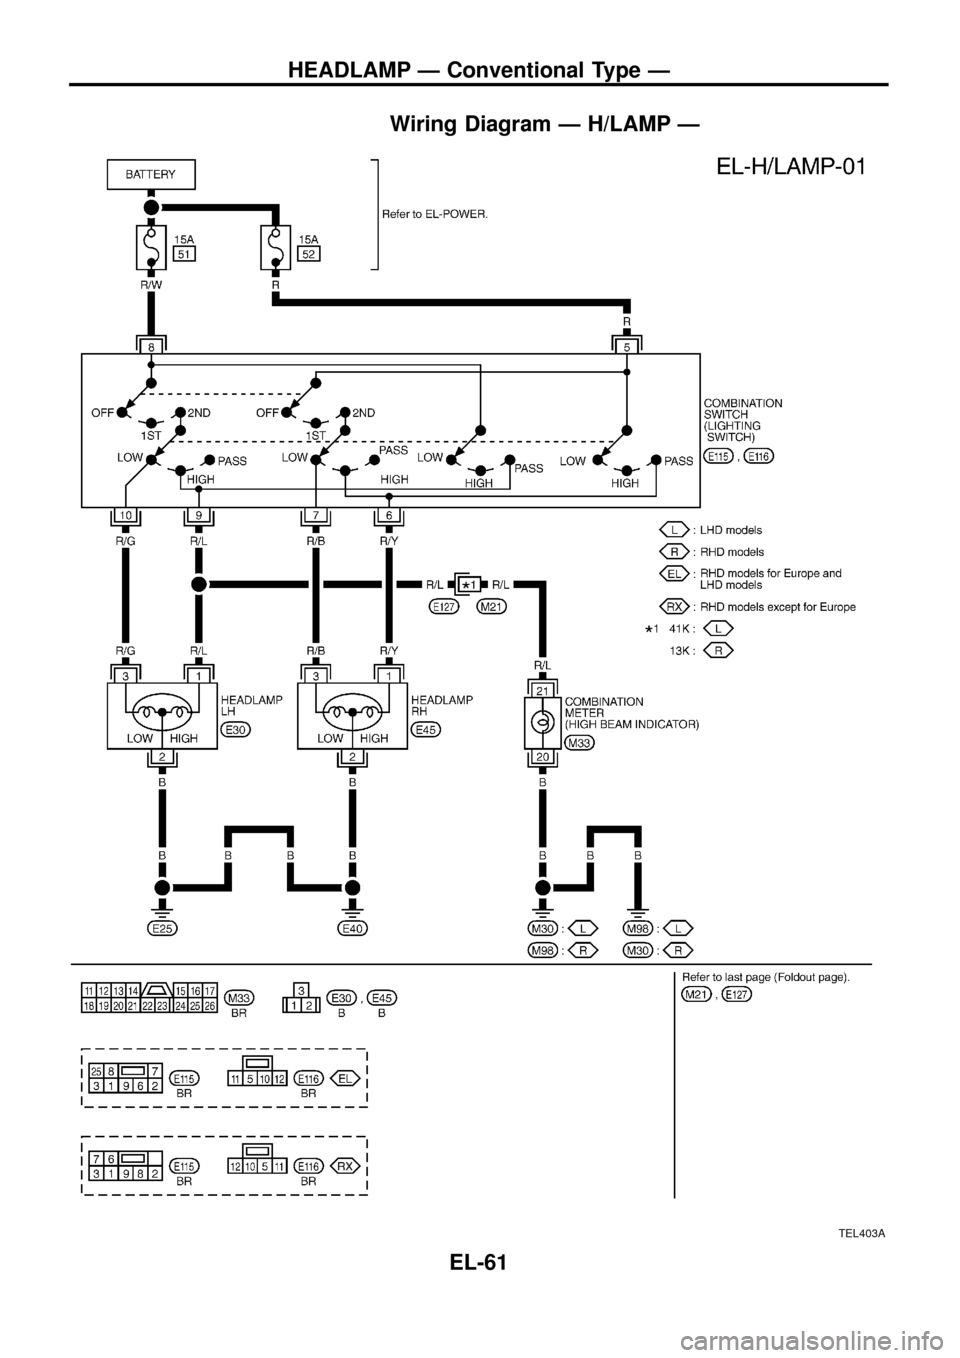 NISSAN PATROL 1998 Y61 / 5.G Electrical System Repair Manual Wiring Diagram Ð H/LAMP Ð
TEL403A
HEADLAMP Ð Conventional Type Ð
EL-61 